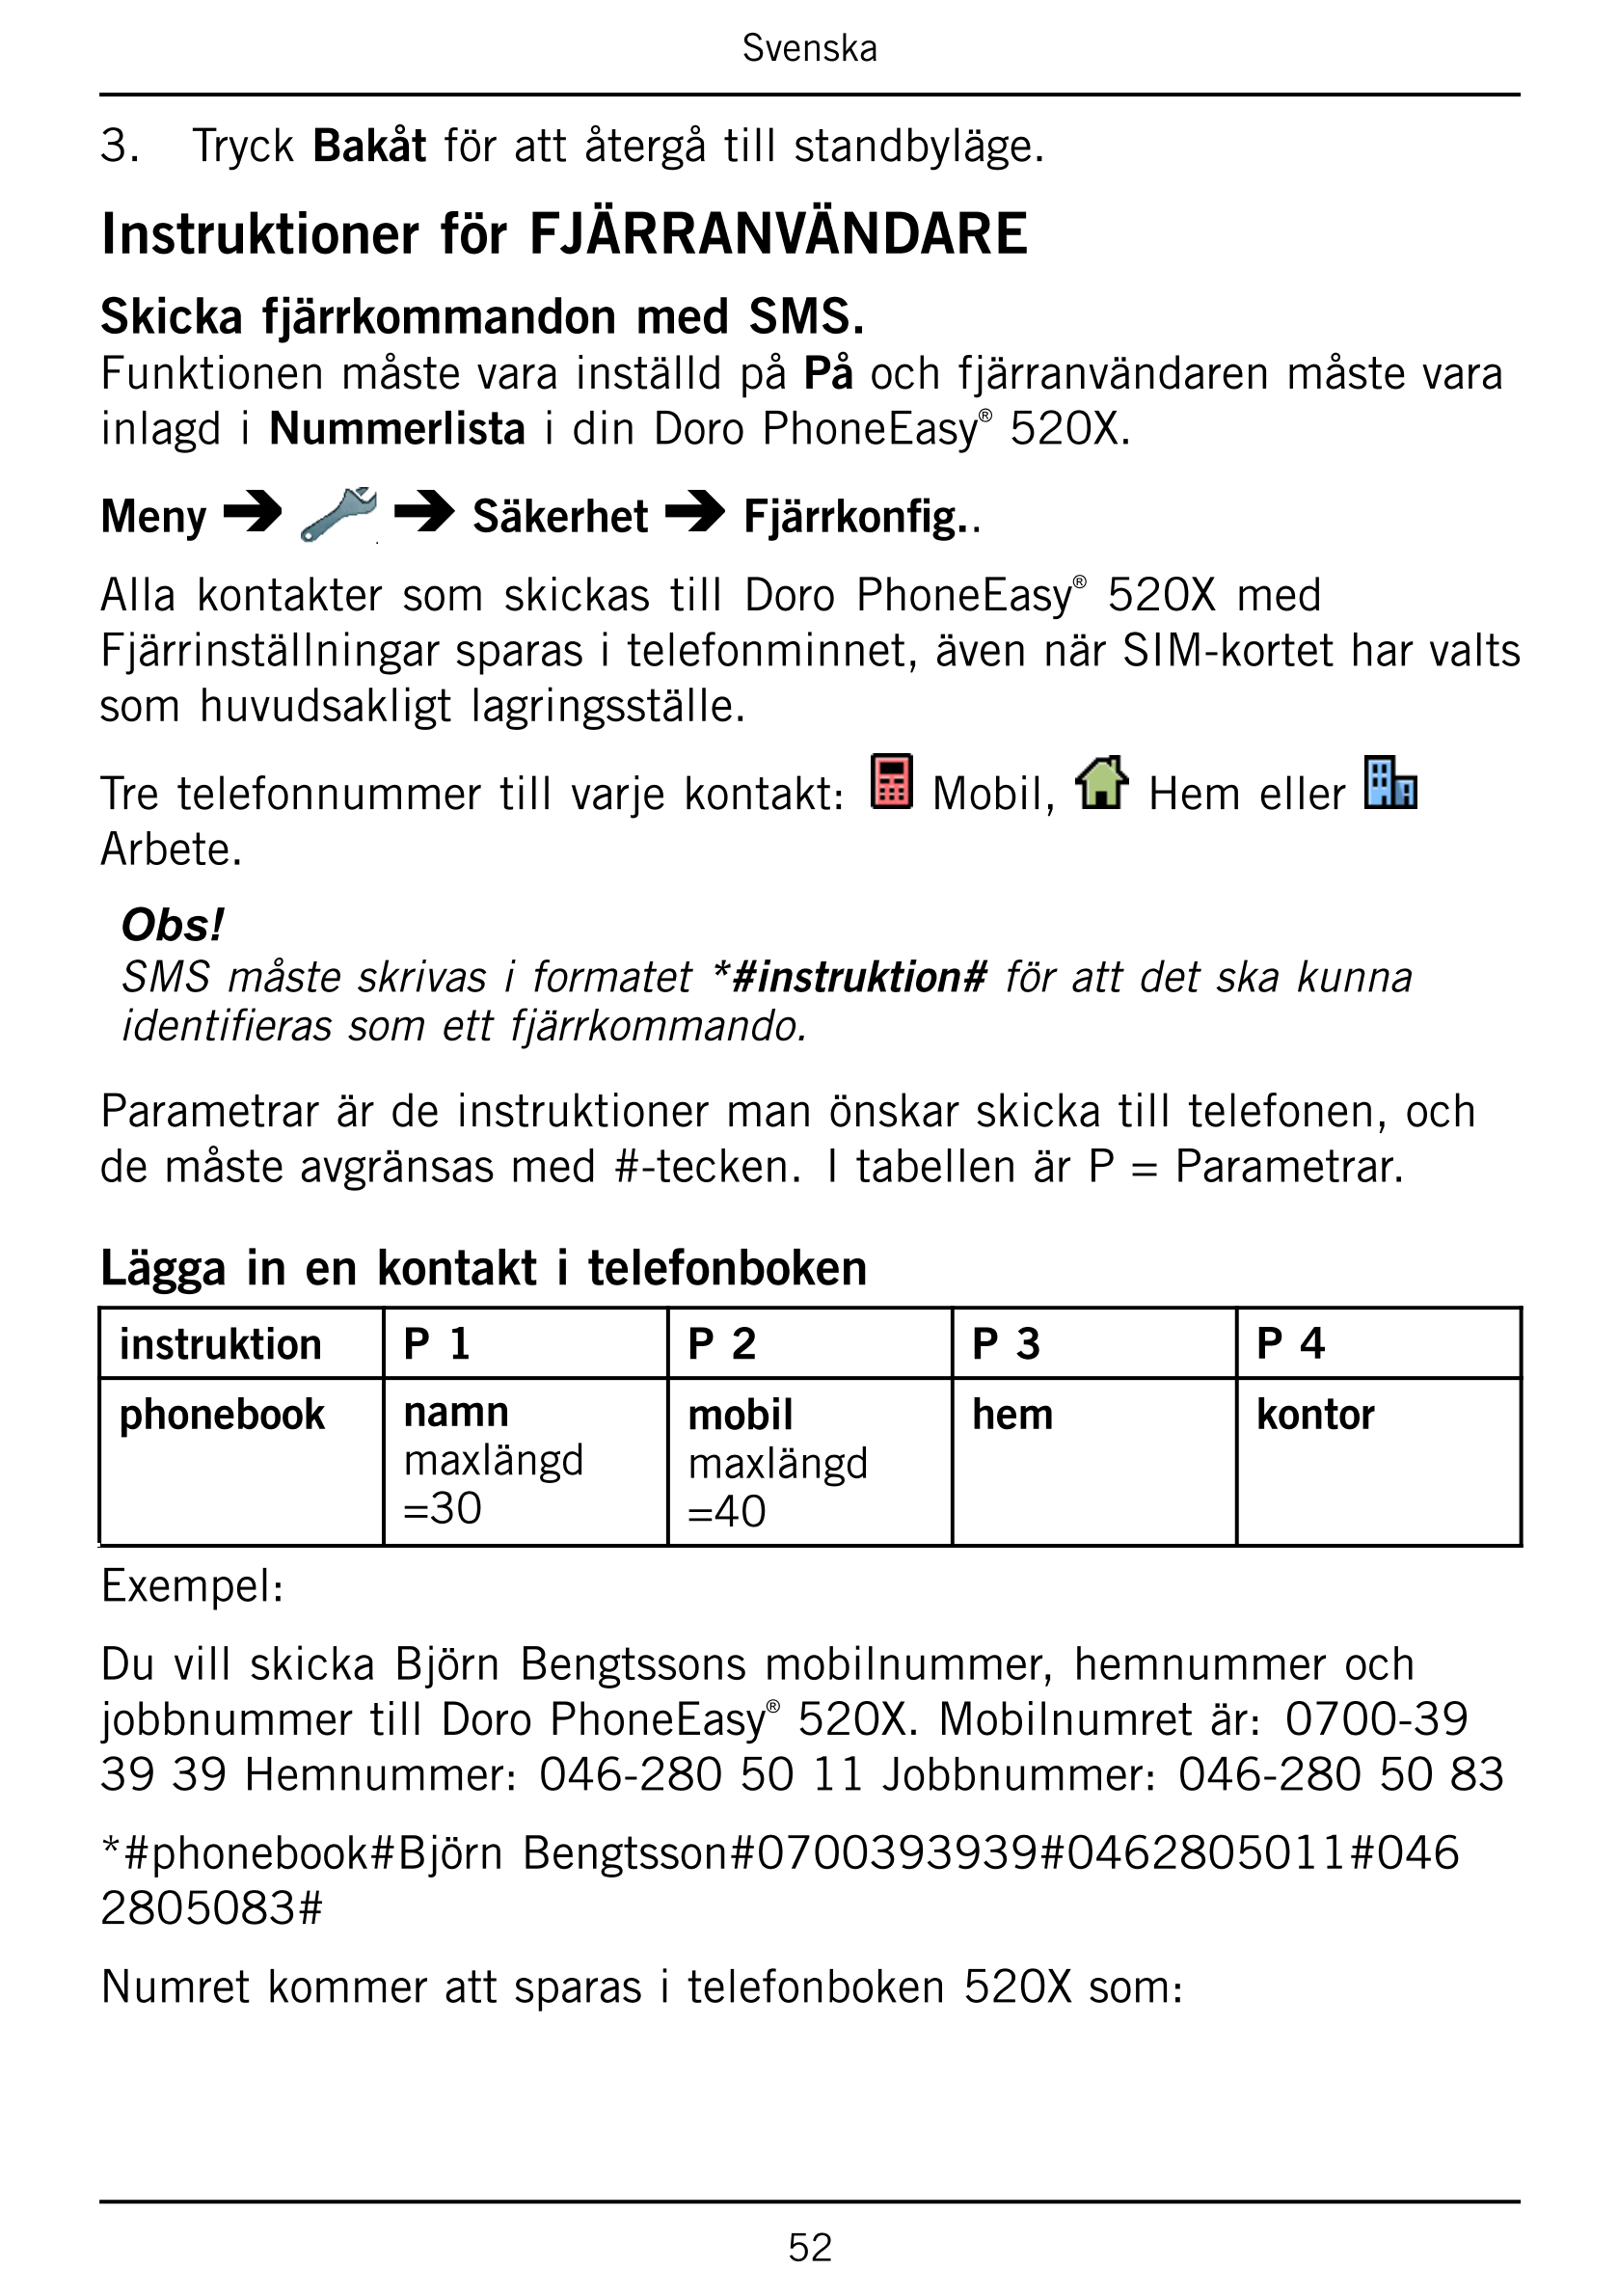 Svenska
3.     Tryck Bakåt för att återgå till standbyläge.
Instruktioner för FJÄRRANVÄNDARE
Skicka fjärrkommandon med SMS.
Funk